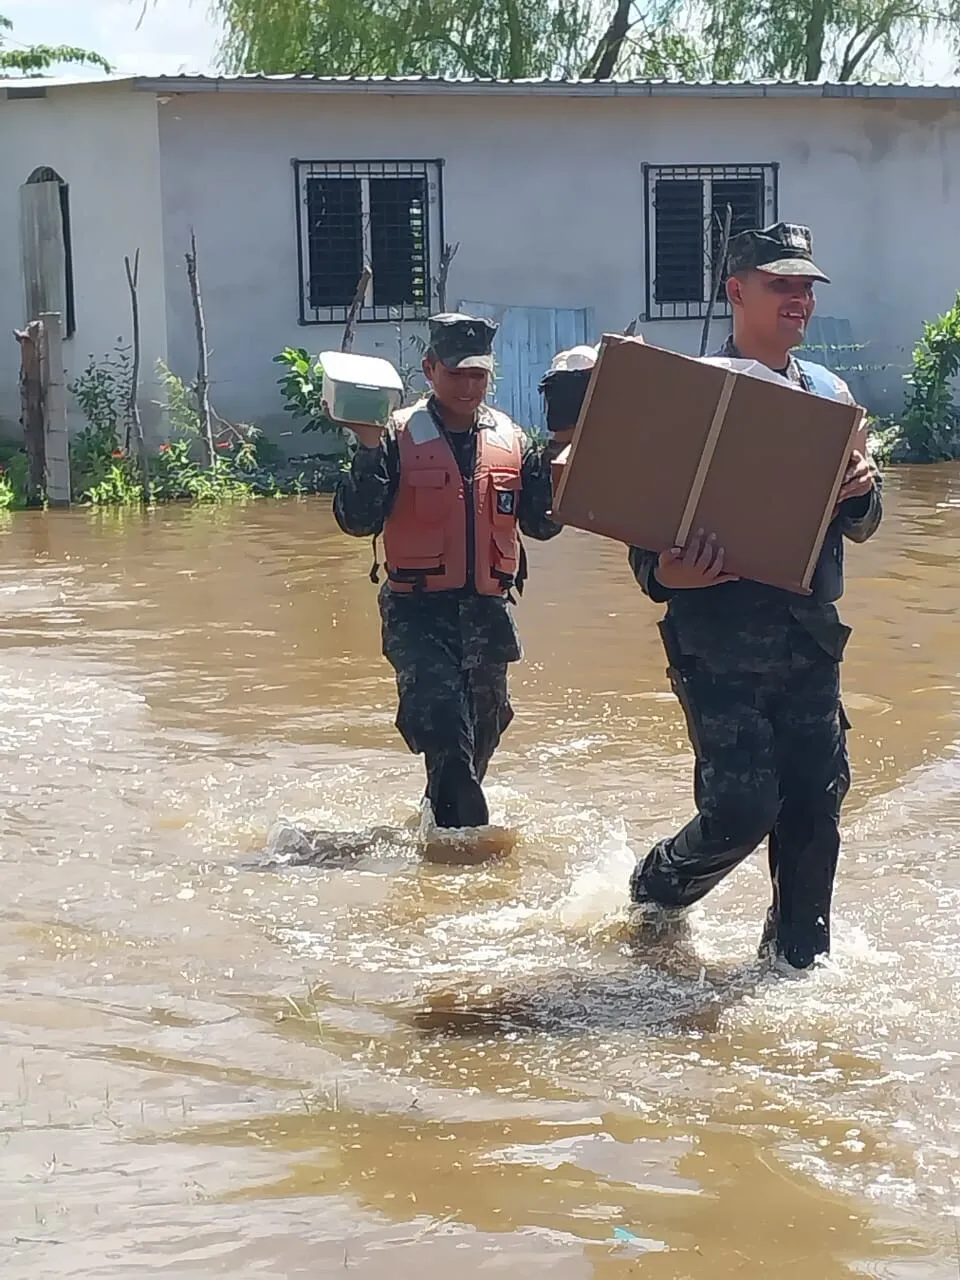 La FFAA realiza operaciones de evacuación de familias y remoción de escombros en zonas afectadas por las lluvias 05